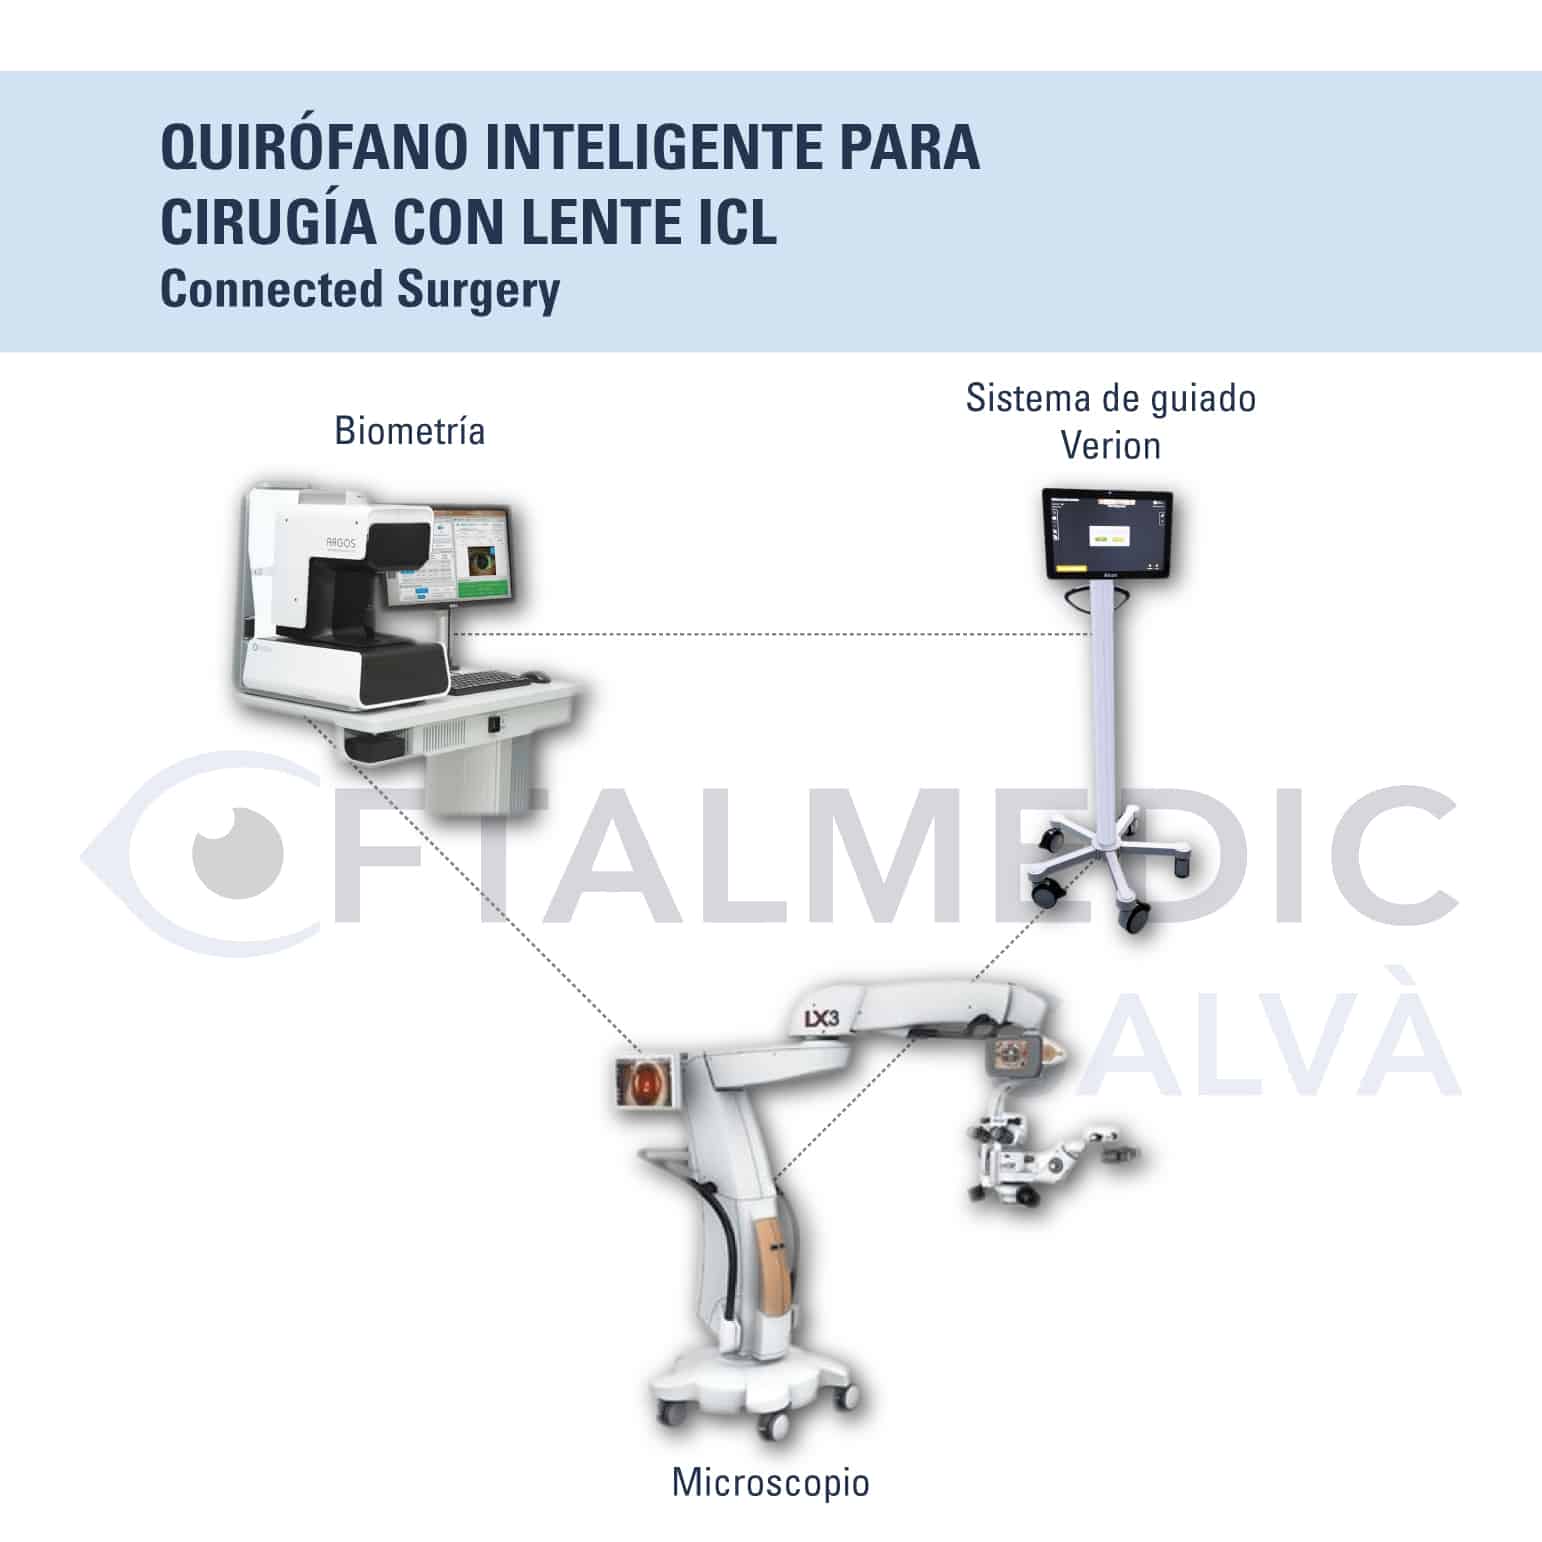 Quirófano Inteligente para cirugía refractiva con lente ICL